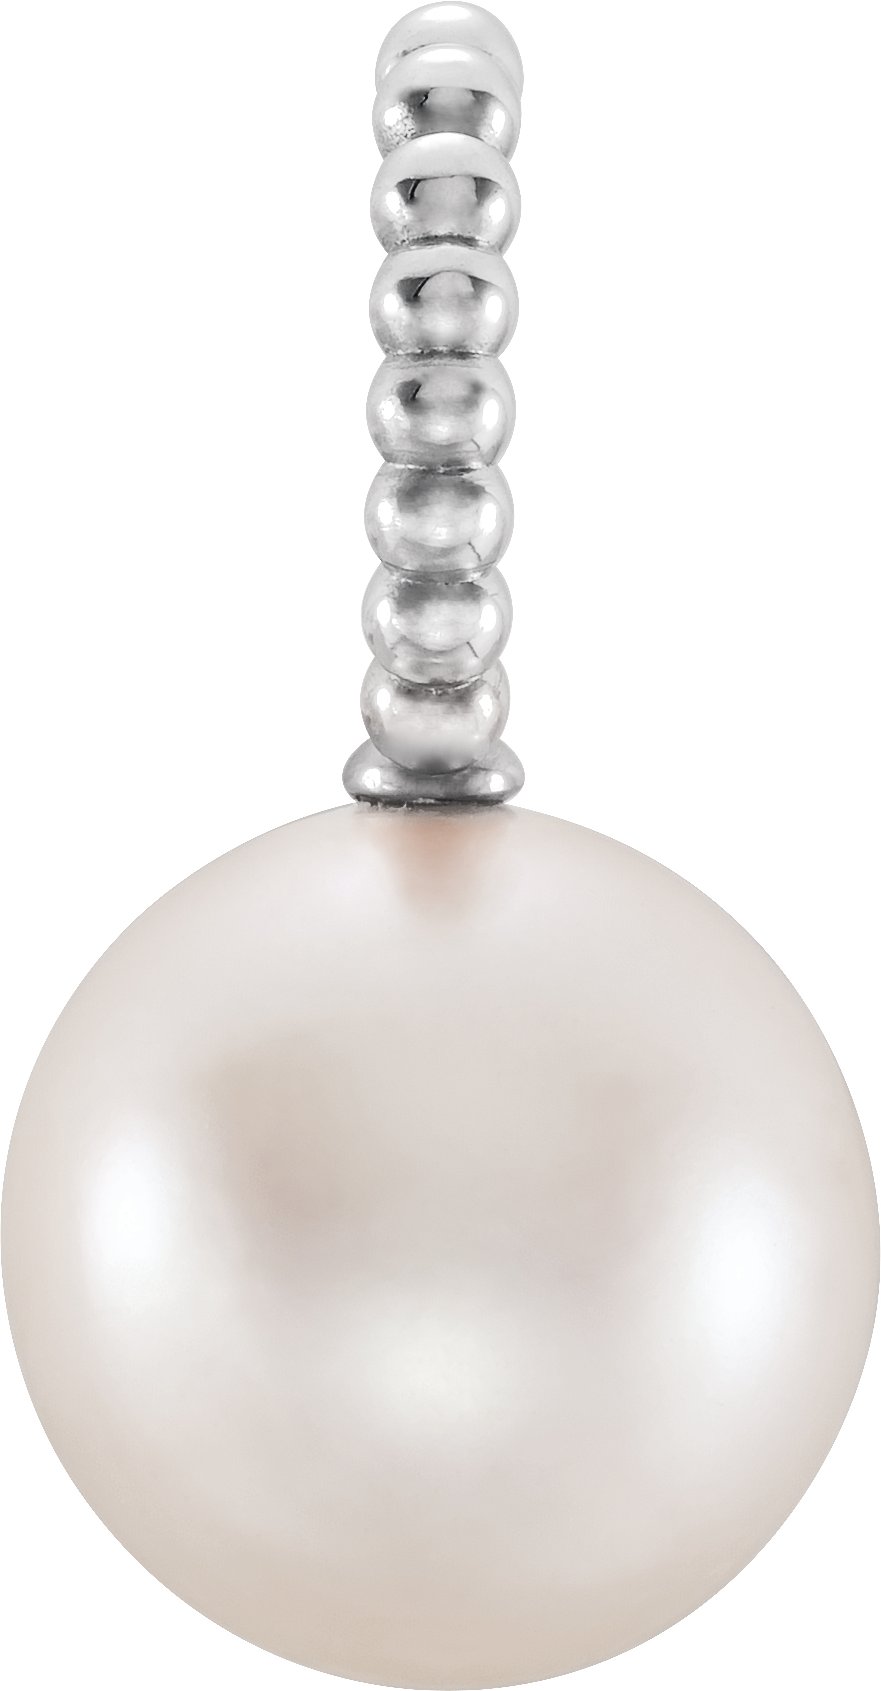 14K White Cultured White Freshwater Pearl Beaded Pendant